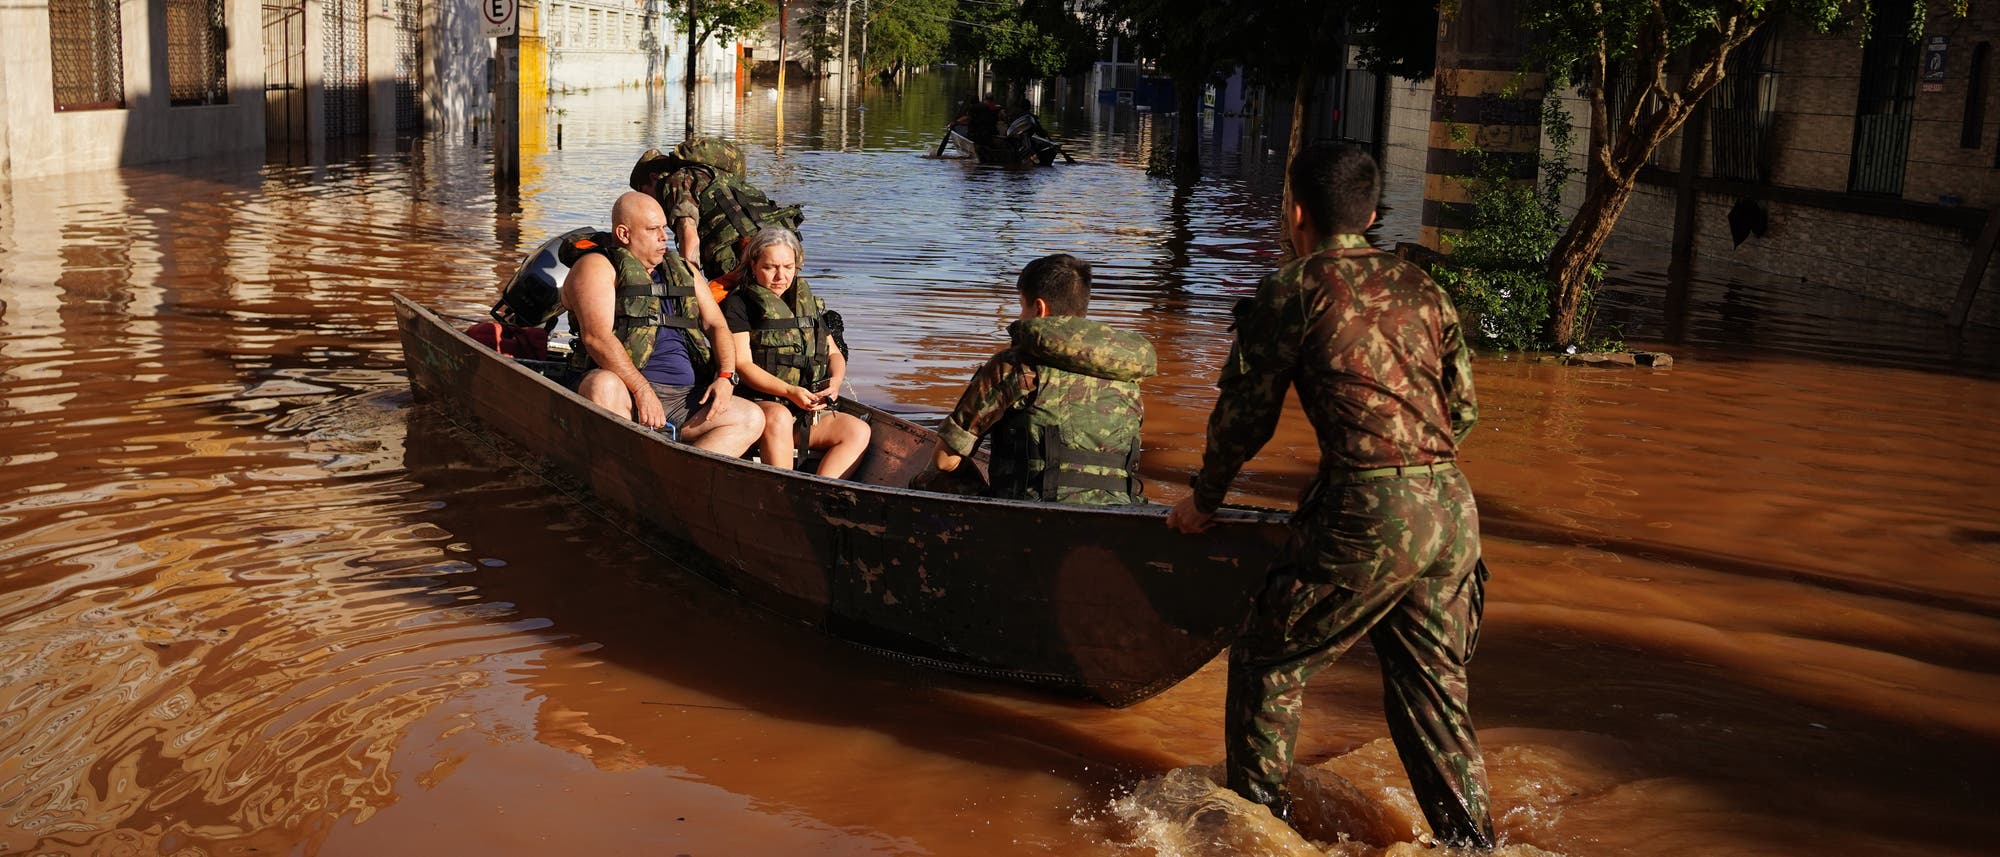 Menschen werden aufgrund der Überschwemmungen durch Mitarbeiter der brasilianischen Streitkräfte mit einem Boot evakuiert.  In den Straßen stehen braune Fluten, immerhin scheint gerade die Sonne.